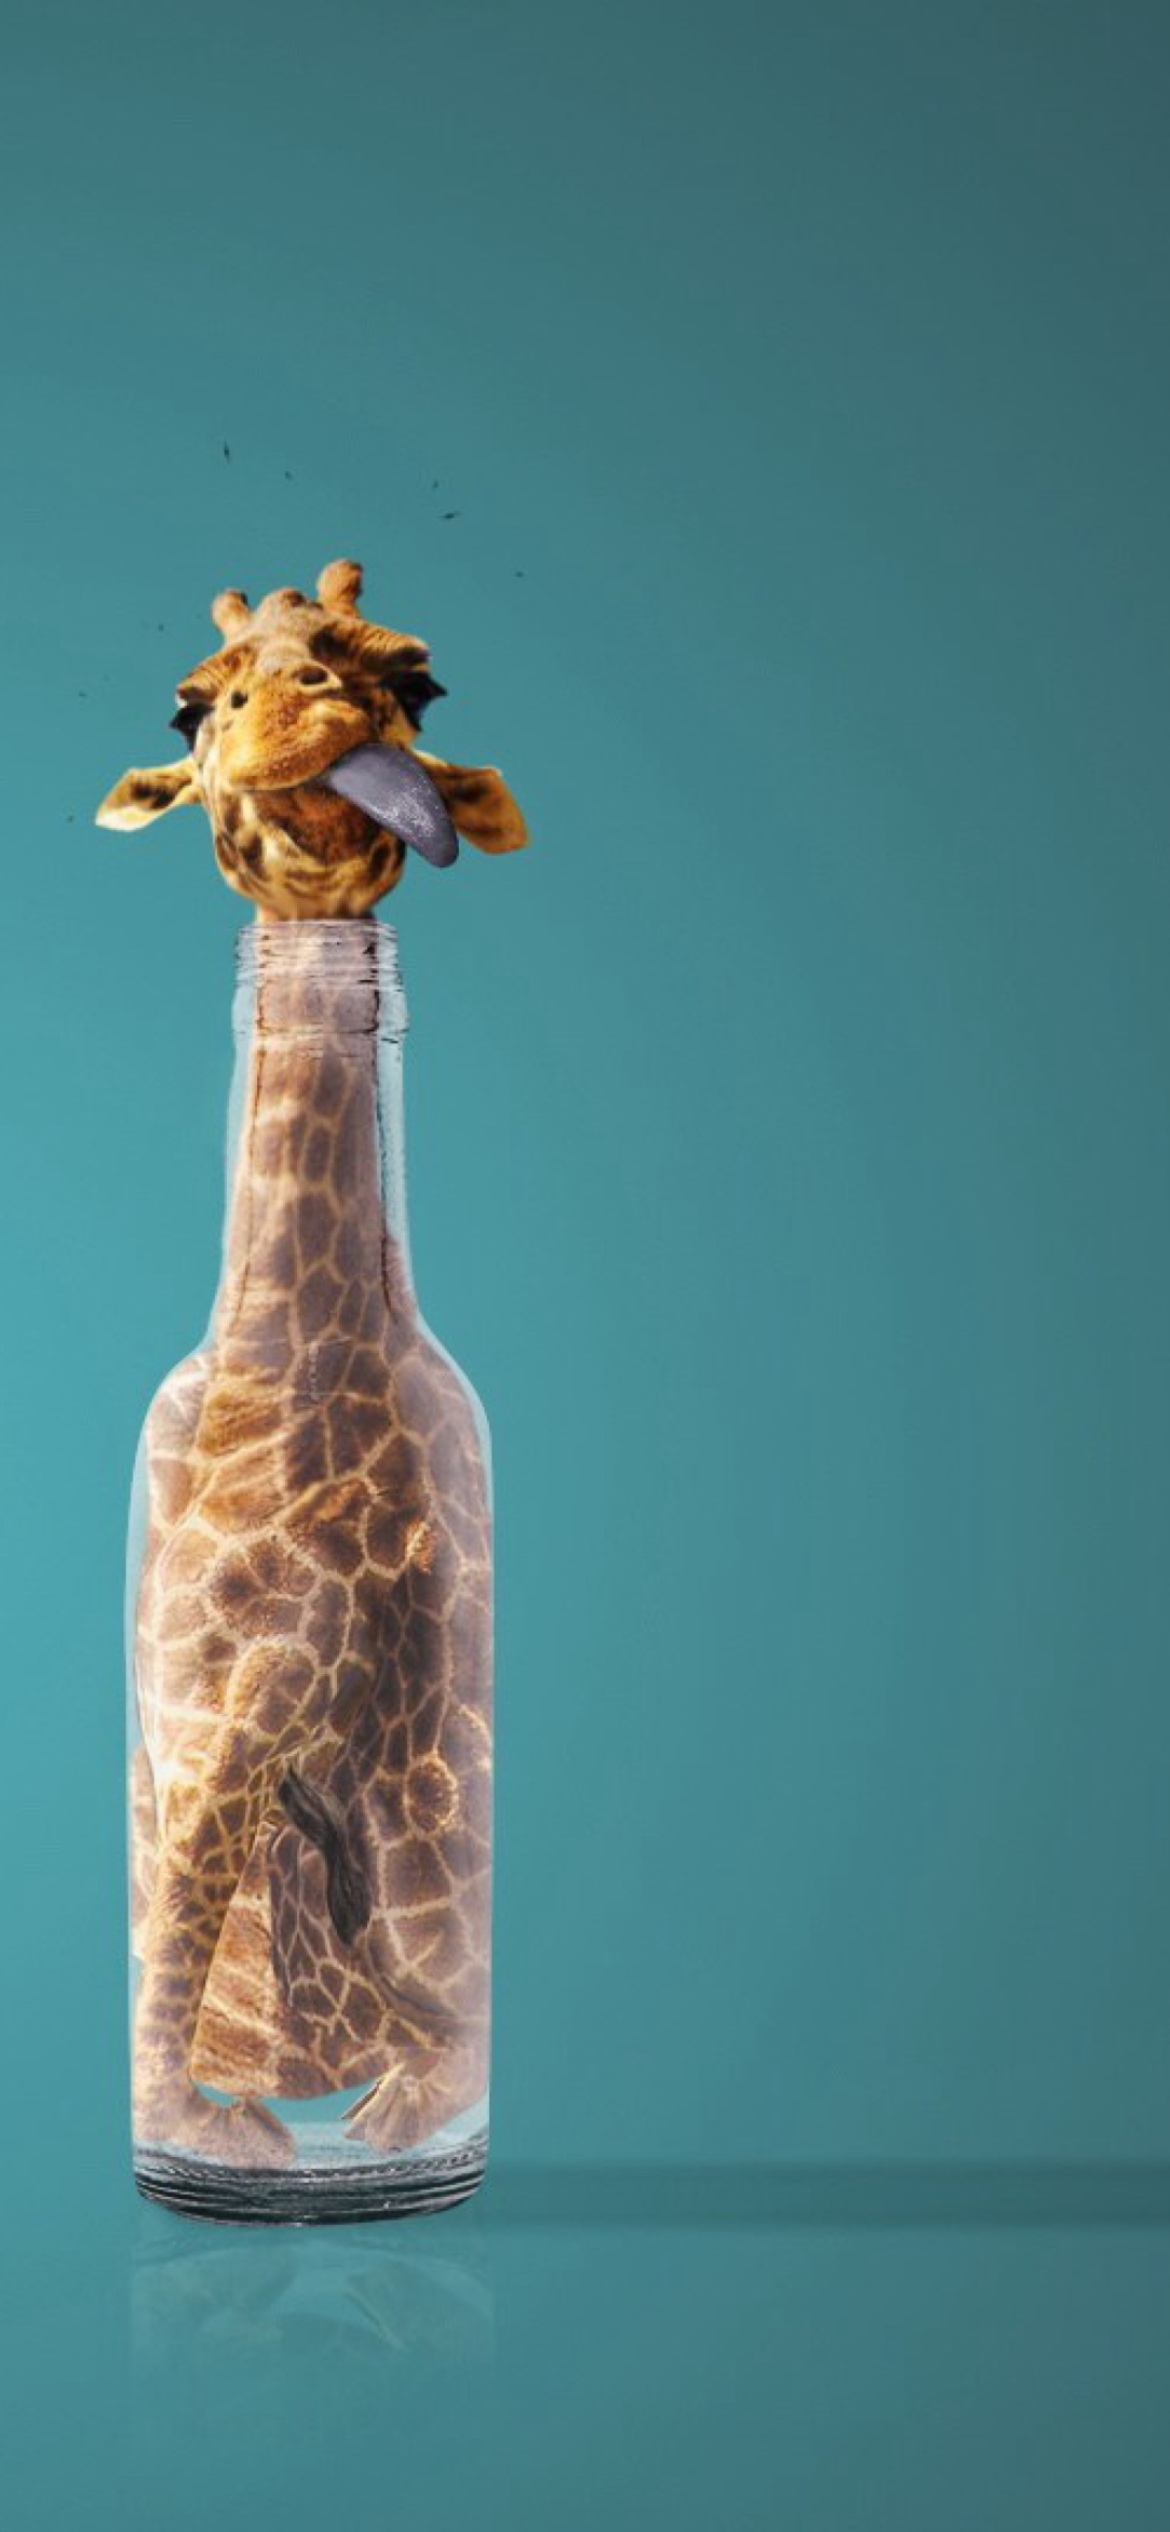 Giraffe In Bottle wallpaper 1170x2532